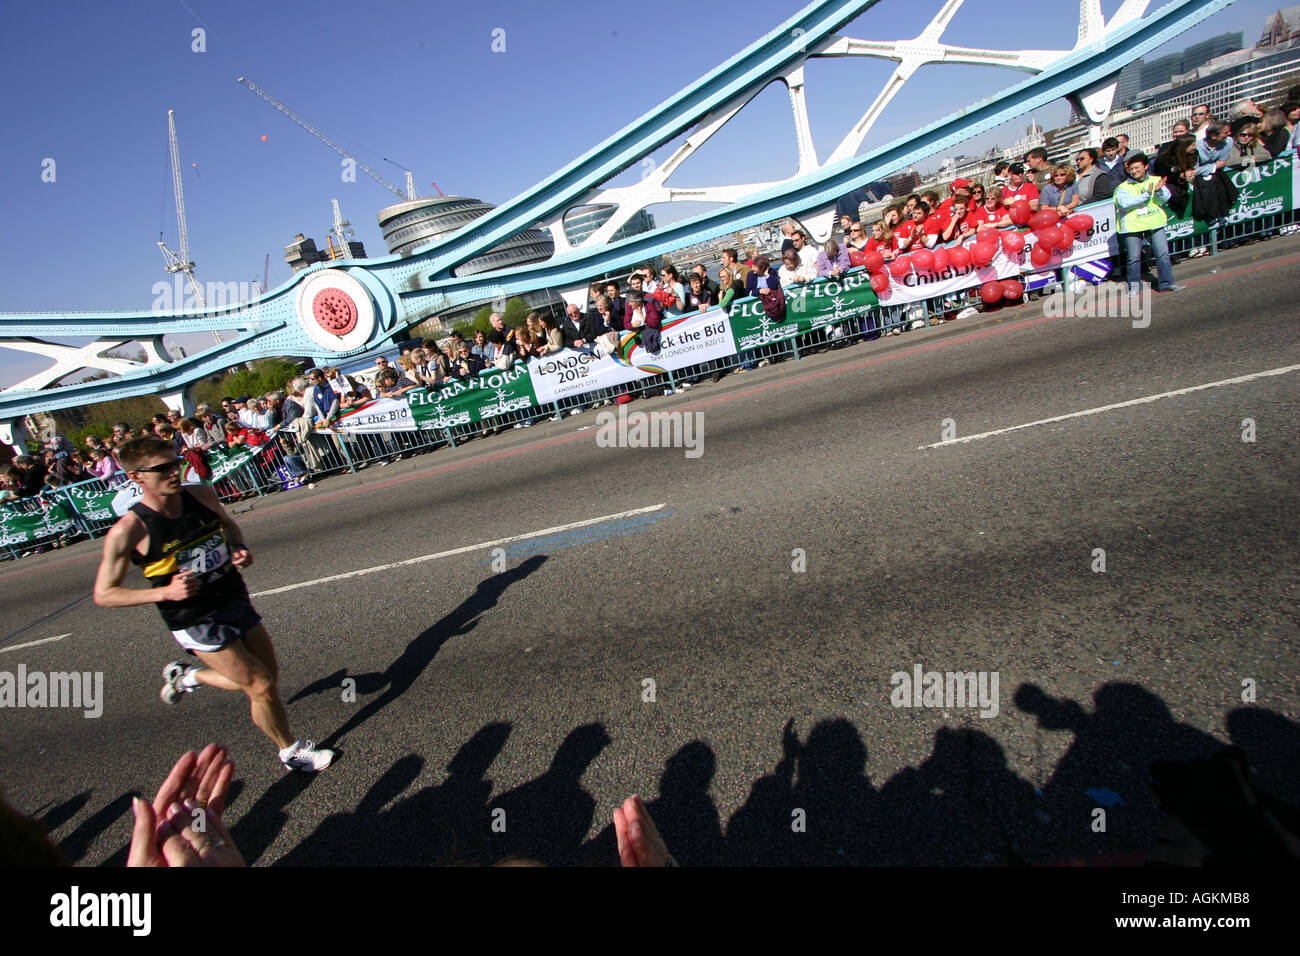 runner on london marathon event Stock Photo